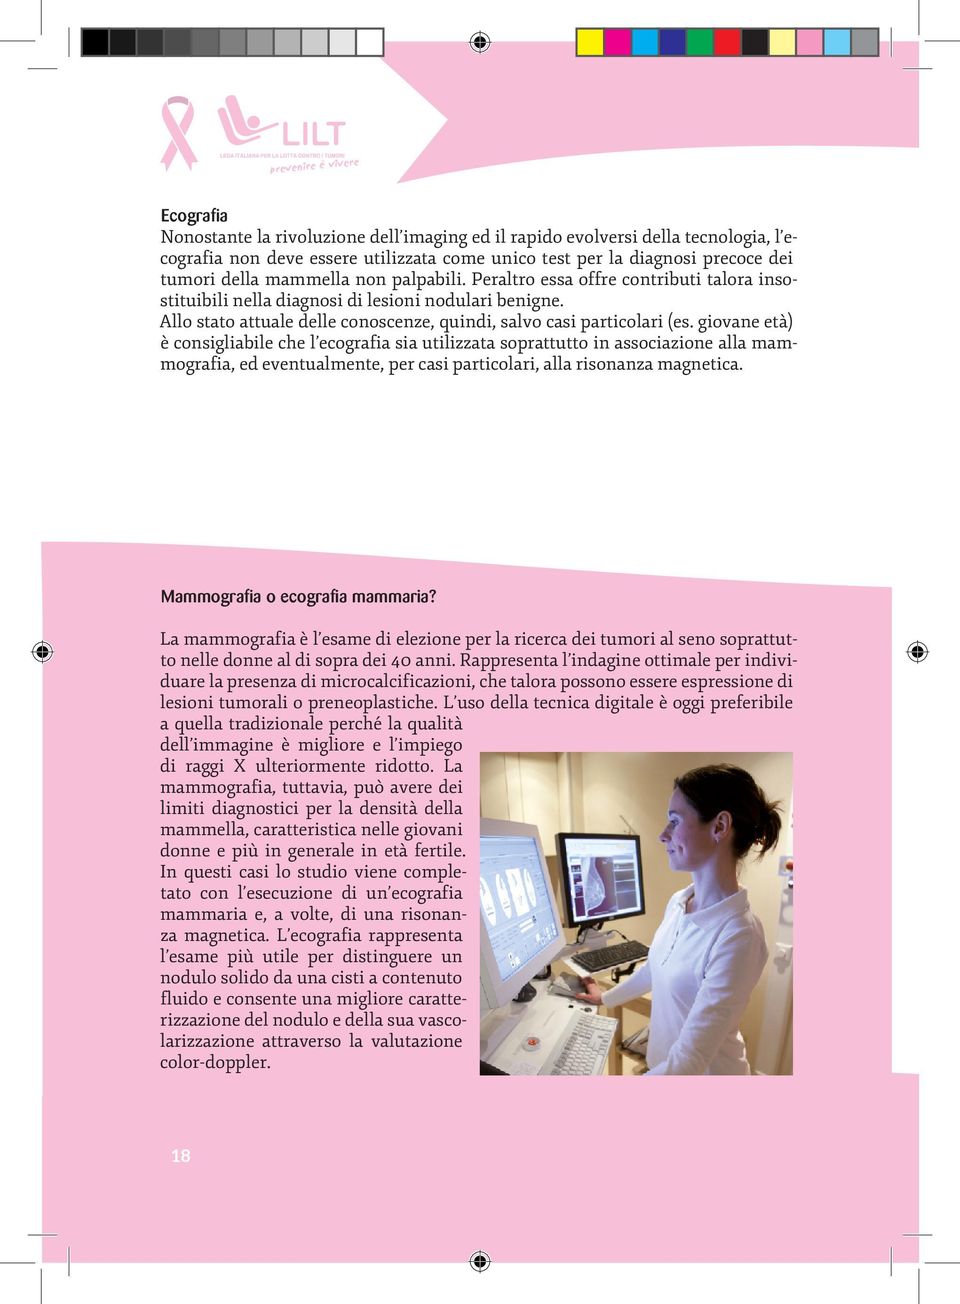 giovane età) è consigliabile che l ecografia sia utilizzata soprattutto in associazione alla mammografia, ed eventualmente, per casi particolari, alla risonanza magnetica.